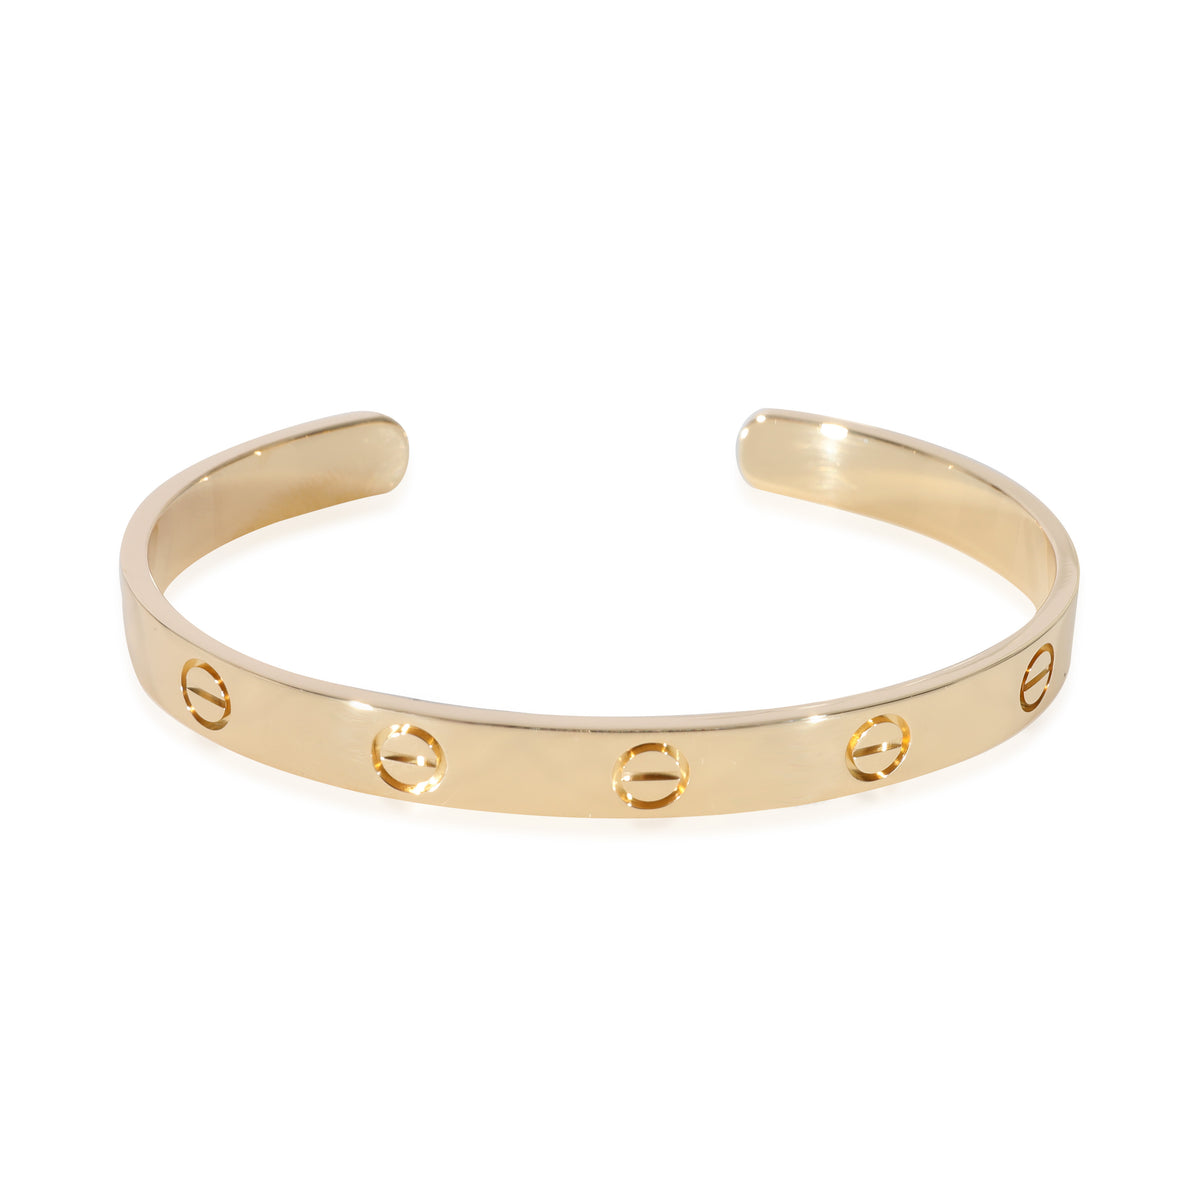 Cartier Love Cuff Bracelet in 18k Yellow Gold